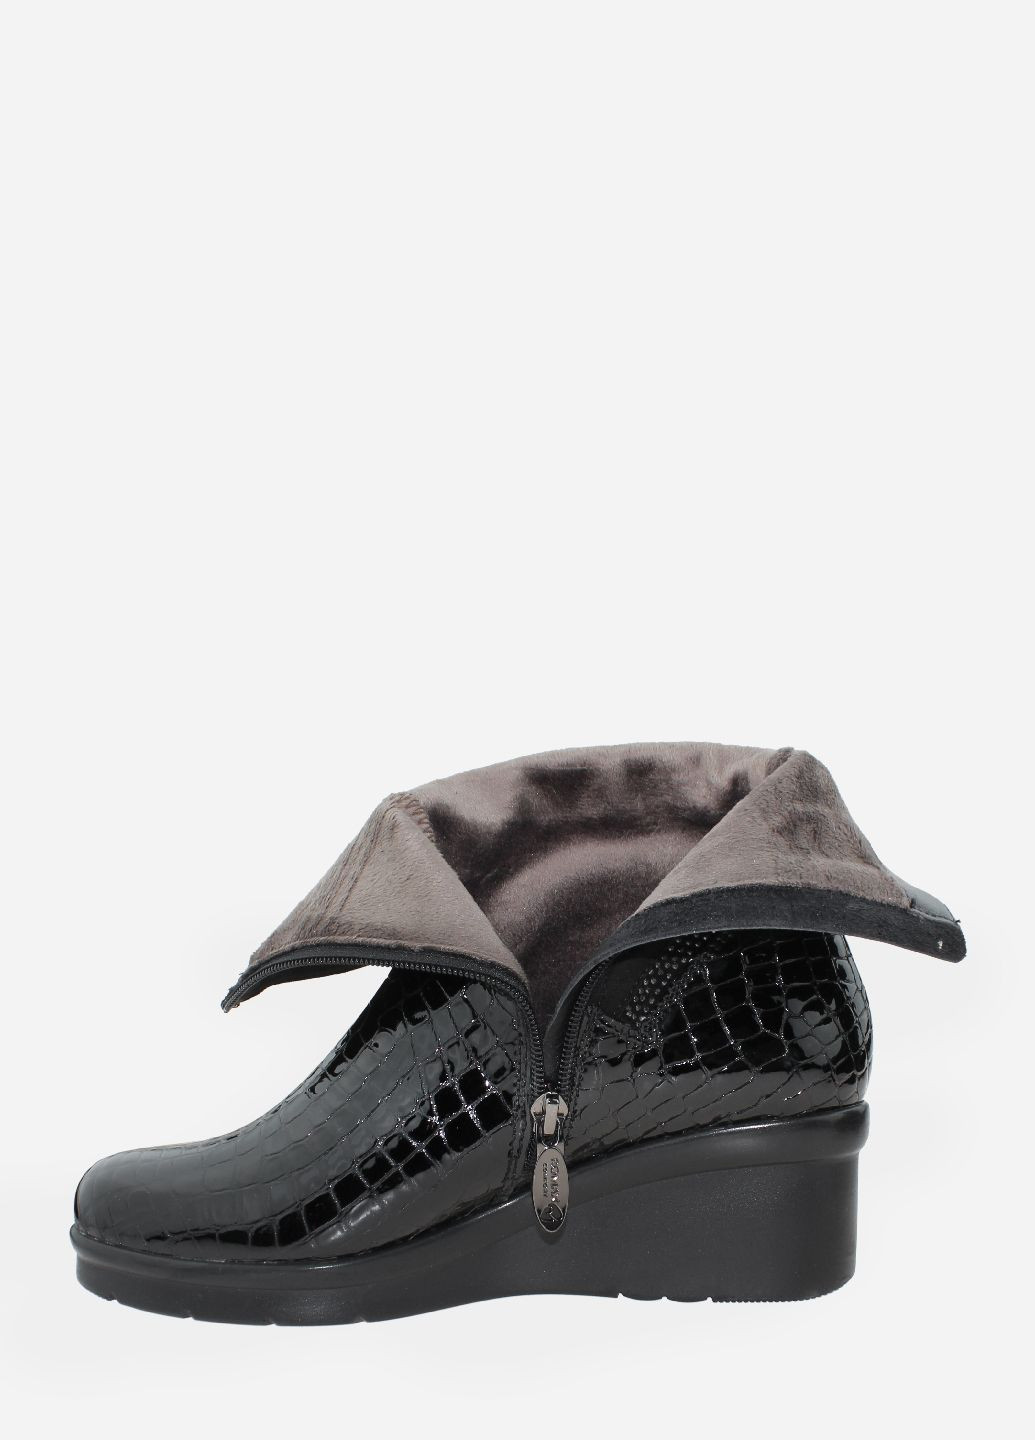 Осенние ботинки rr3085-x01 черный Romax из натуральной замши